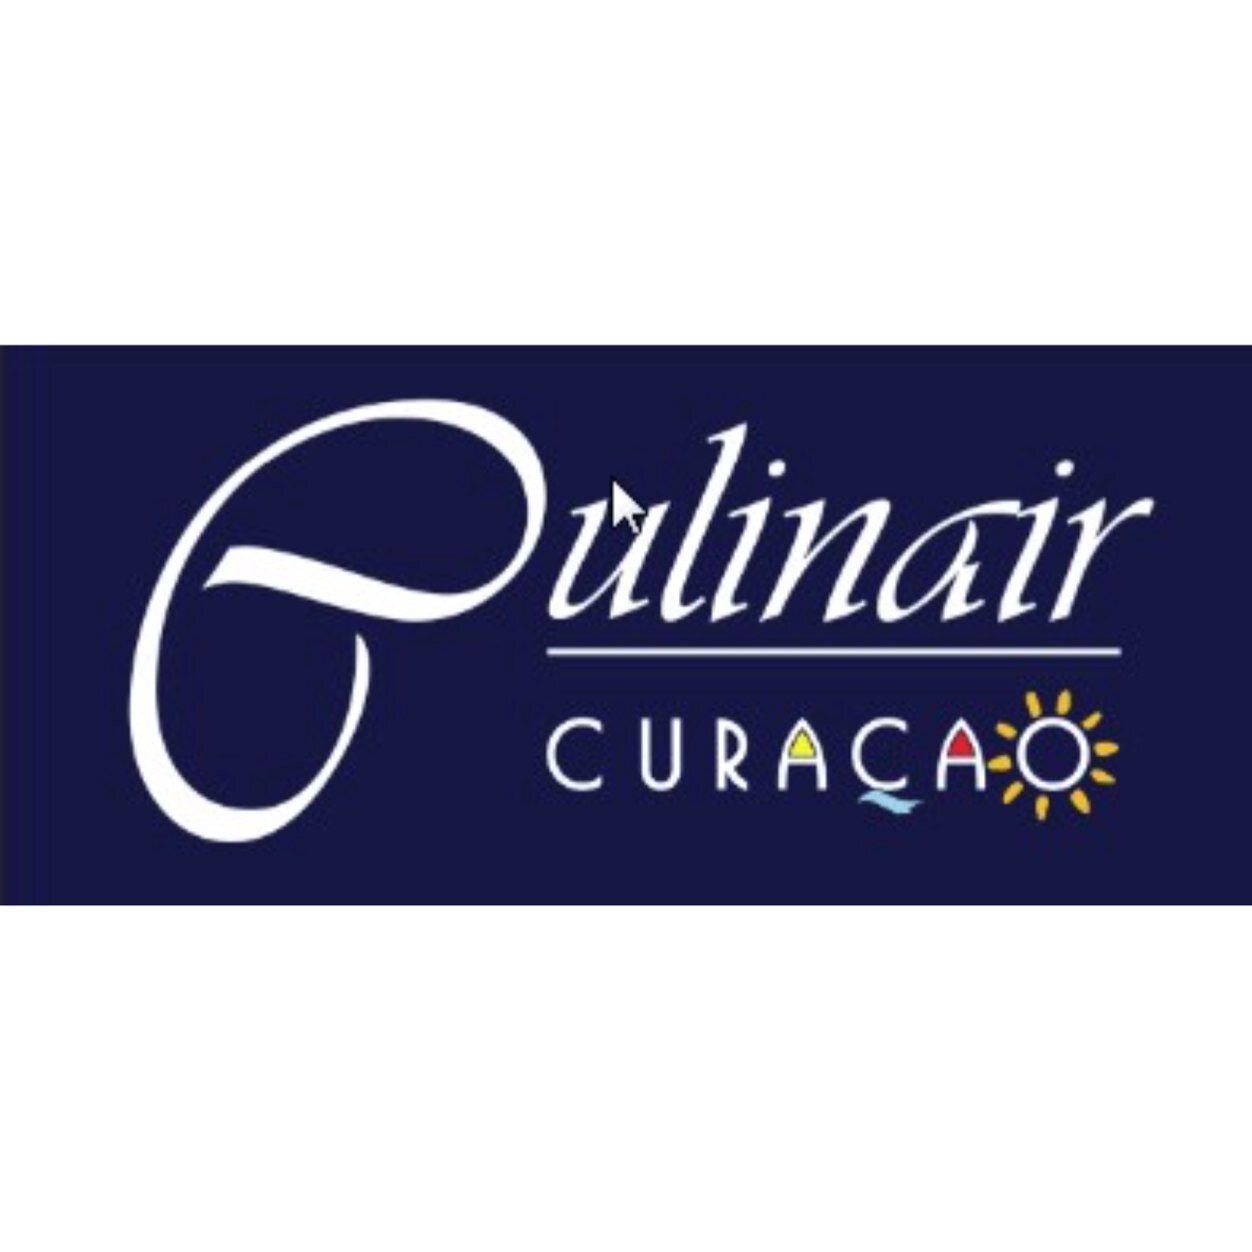 NIEUW: Culinair Curacao. Combineer een Caribische vakantie met culinair genieten op topniveau. Nederlandse topchefs koken op de mooiste plekjes van Curaçao.